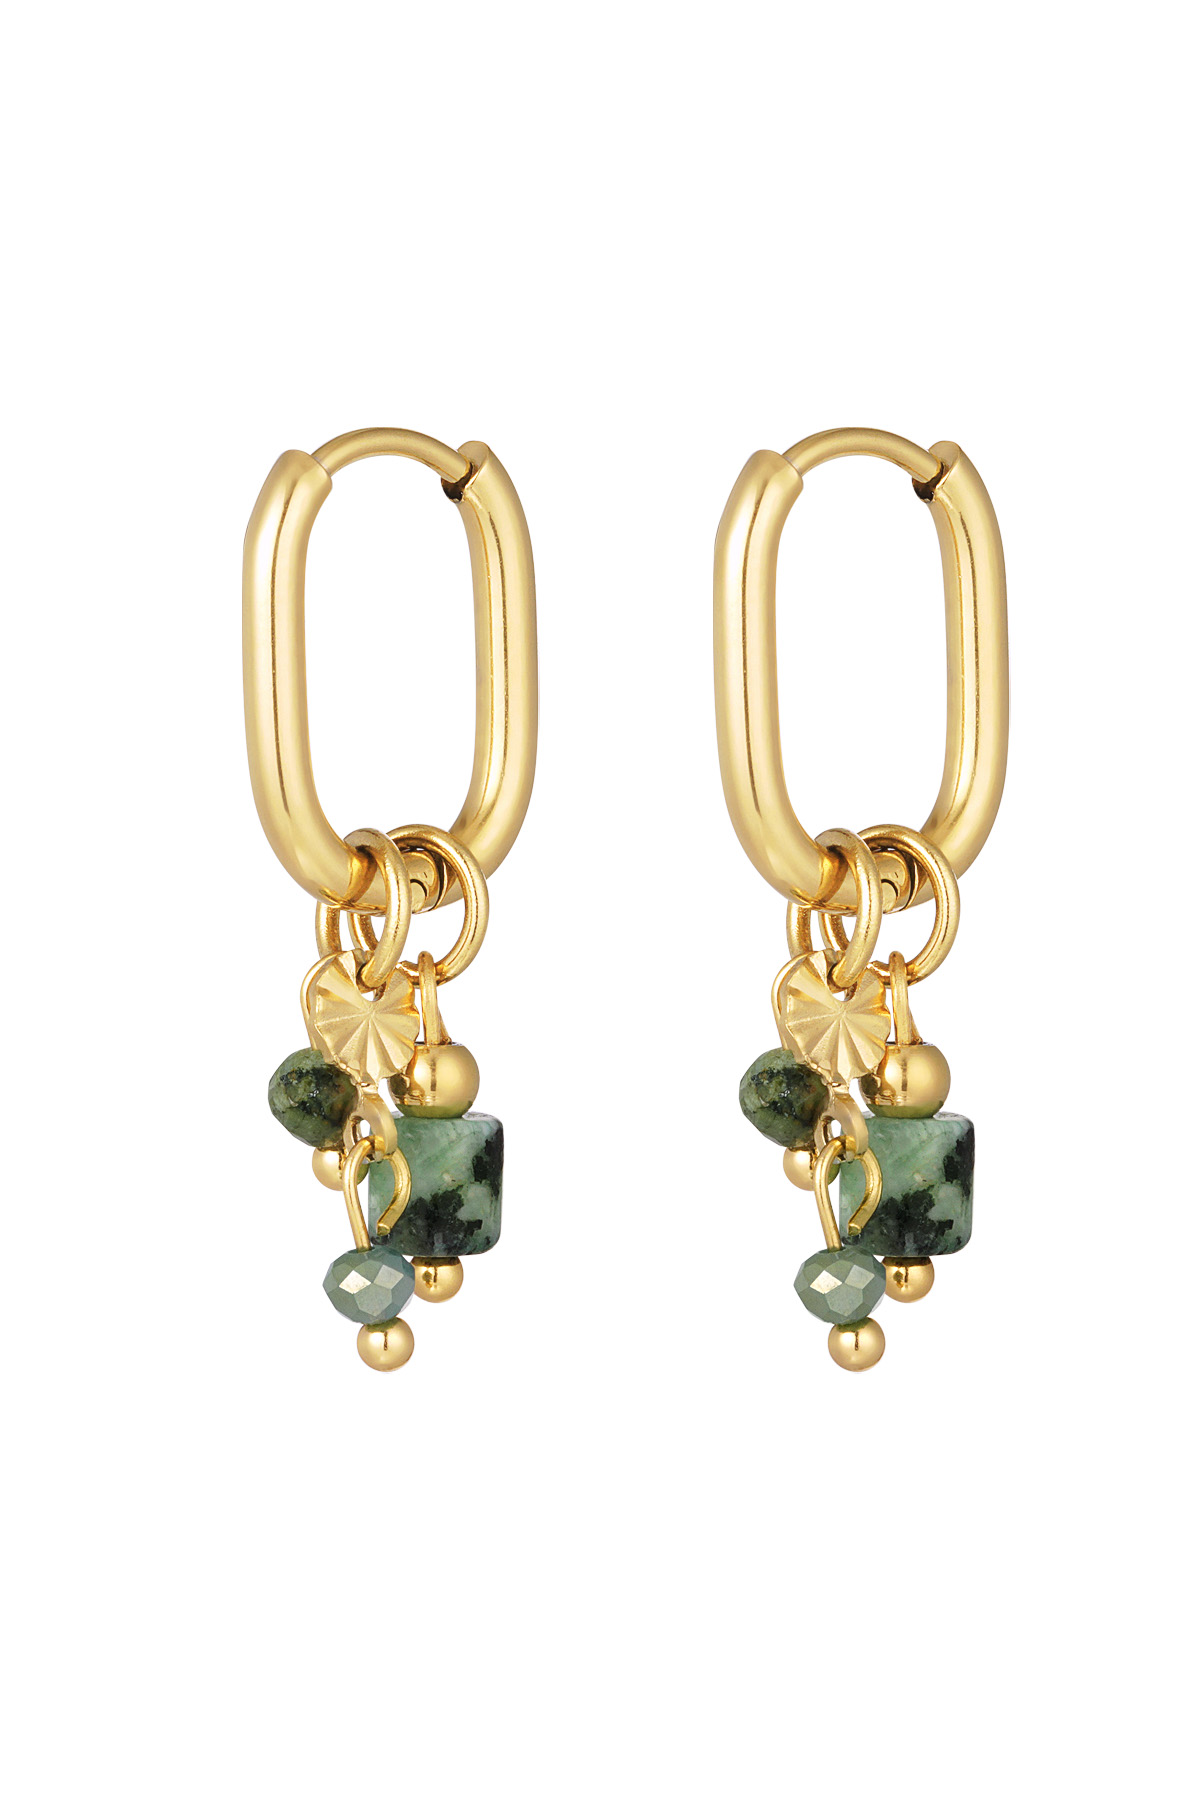 Ohrring mit grünen und schwarzen Perlen – Gold